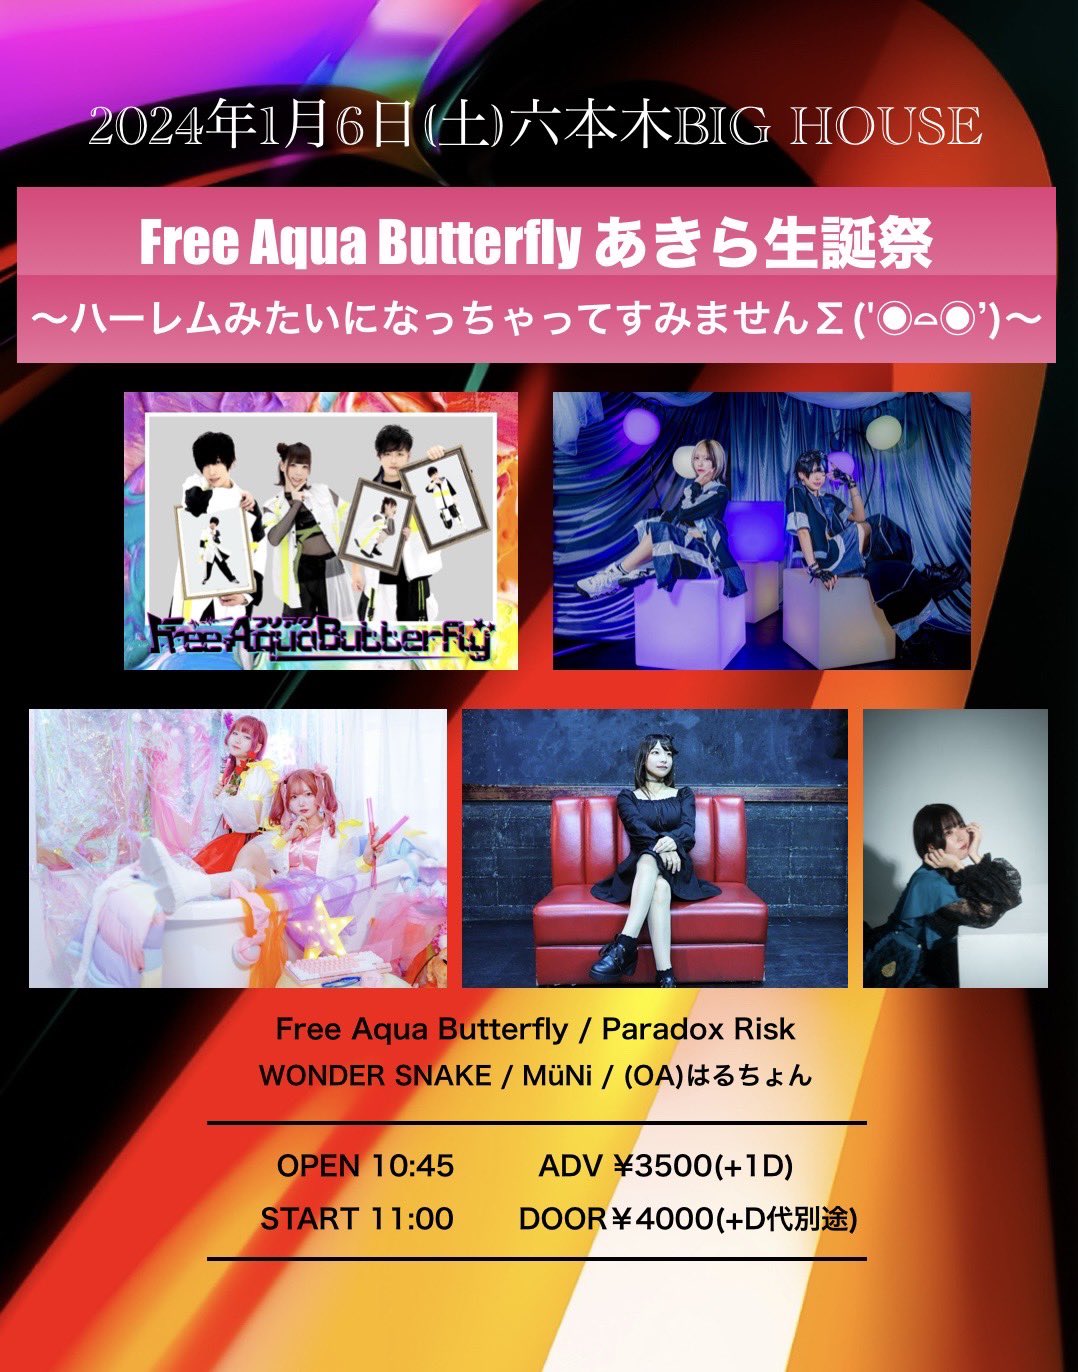 Free Aqua Butterflyあきら生誕 〜ハーレムみたいになっちゃってすみませんΣ(‘◉⌓◉’)〜